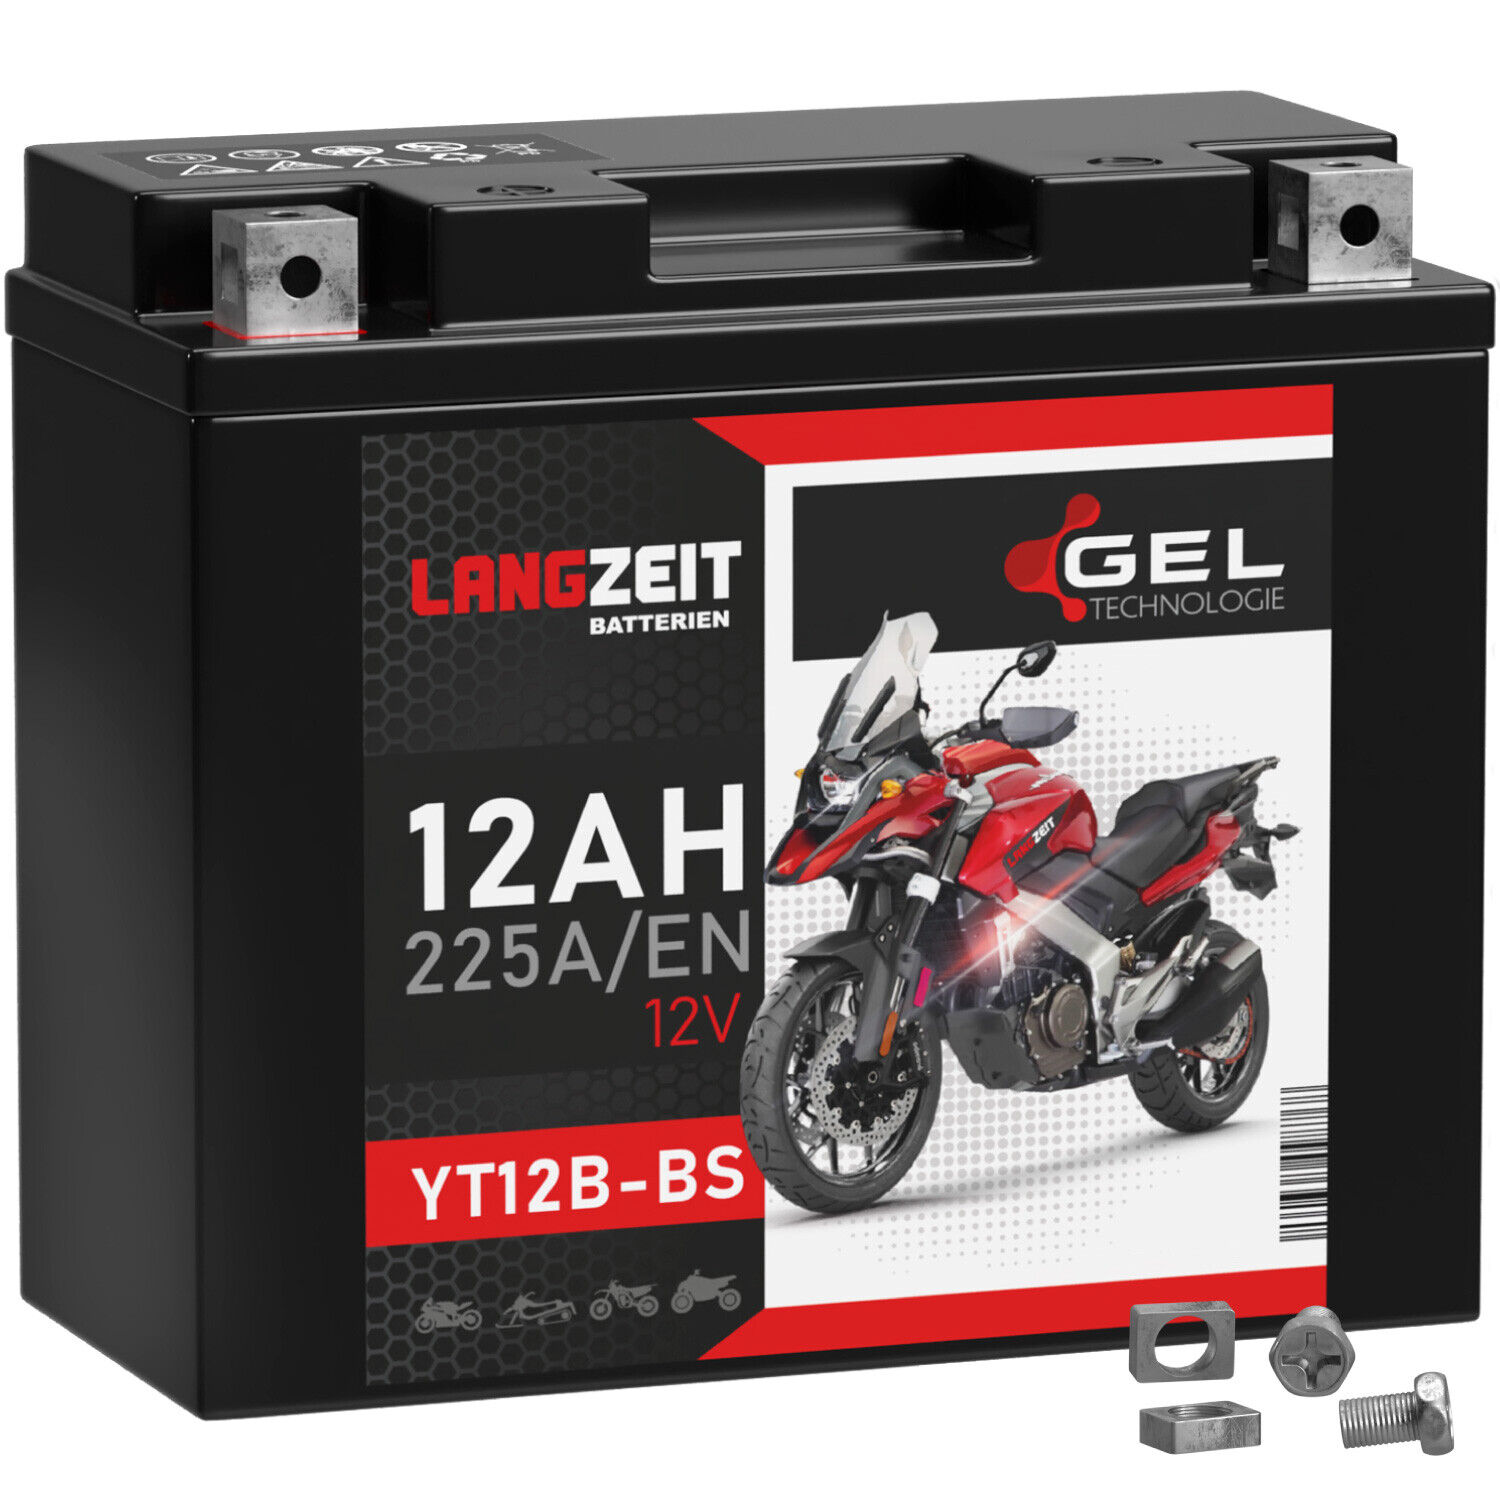 Langzeit YT12B-BS Motorradbatterie Gel 12V 12Ah 51001 YT12-B4 GT12B-4 CT12B-4